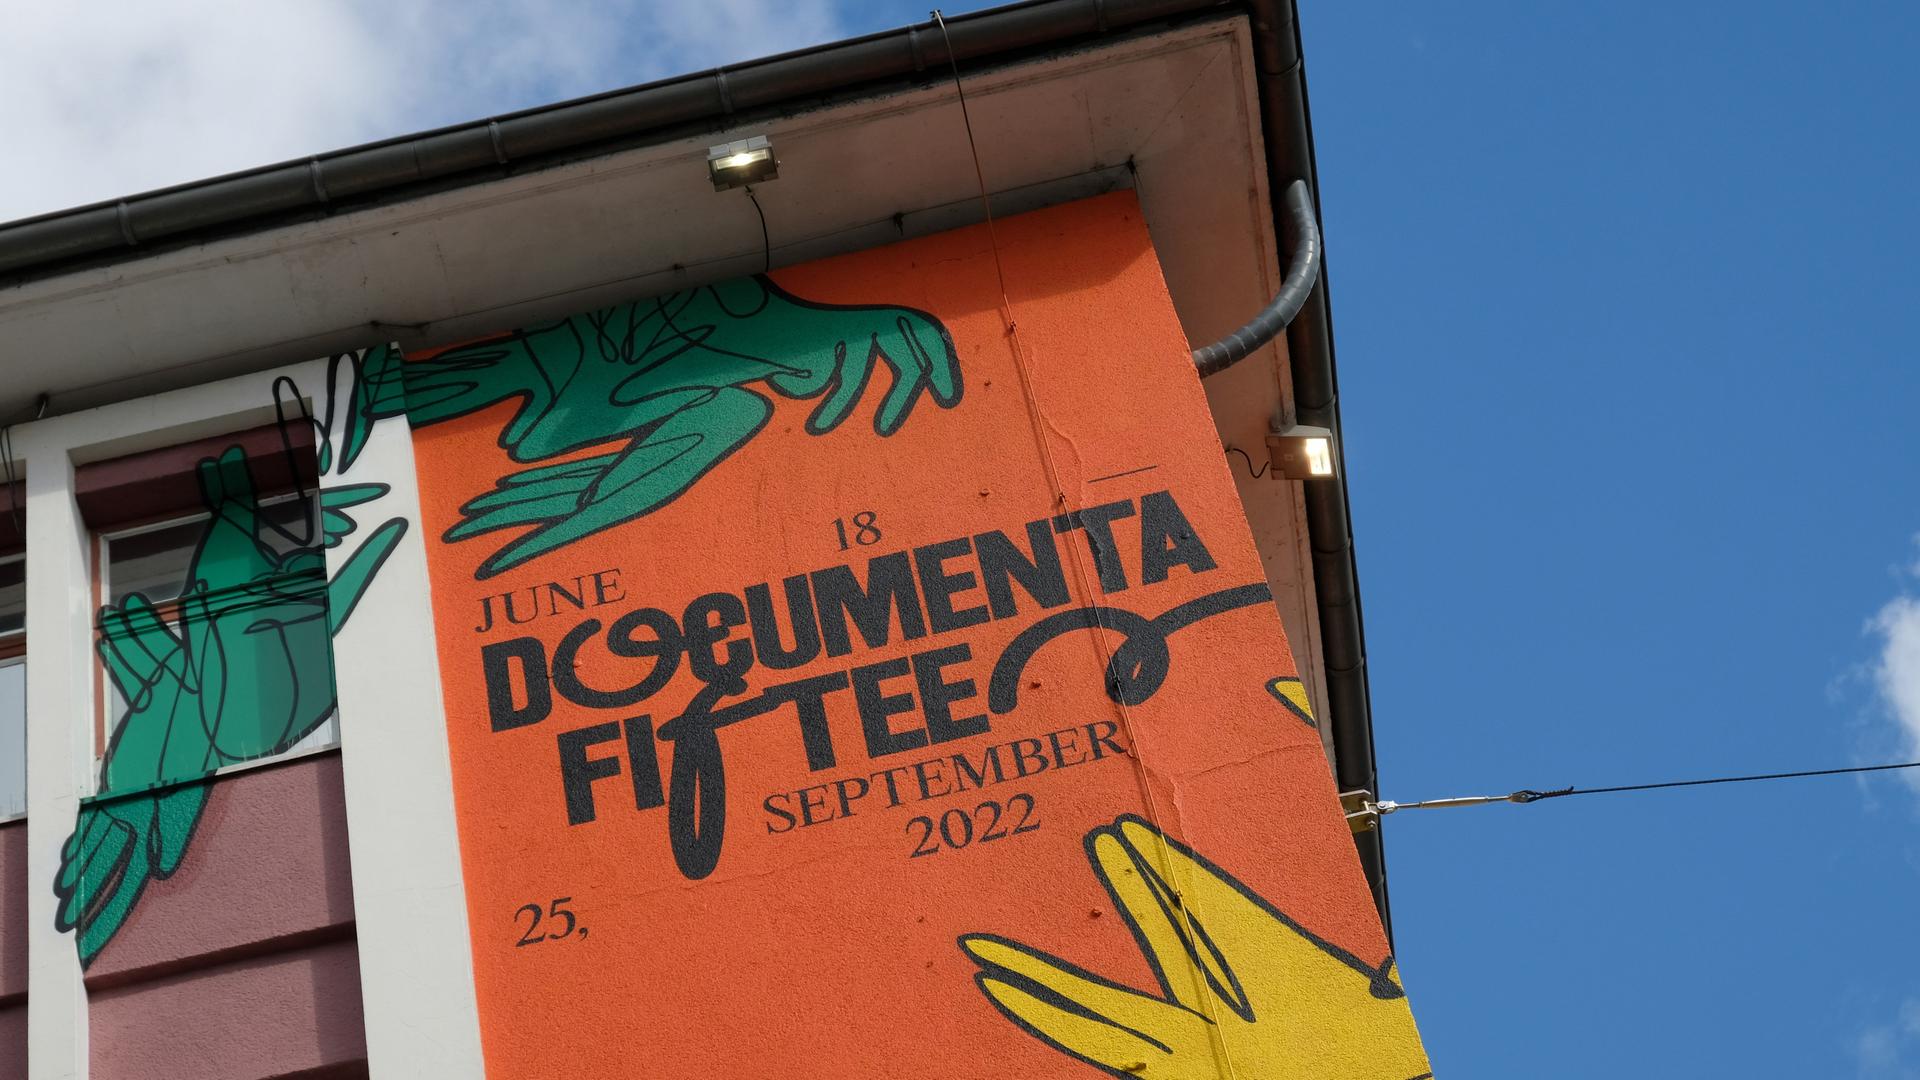 Der Schriftzug "documenta fifteen" und das Logo vom indonesischen Kuratorenkollektiv Ruangrupa prangt an einer Fassade